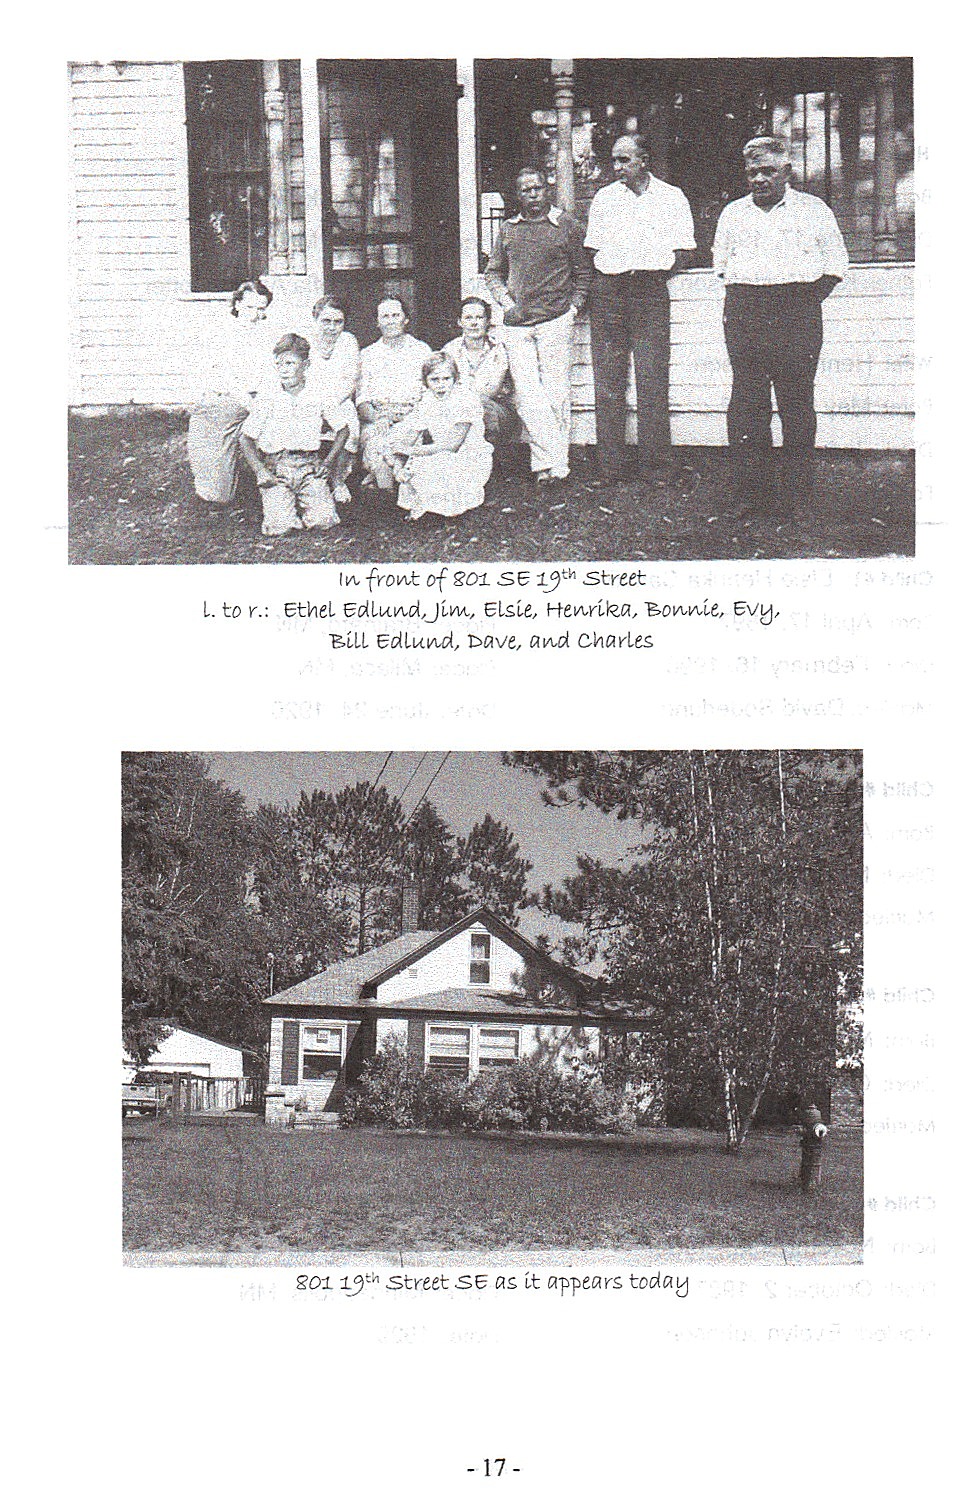 Sid 17, bild på släkten och huset i Brainerd